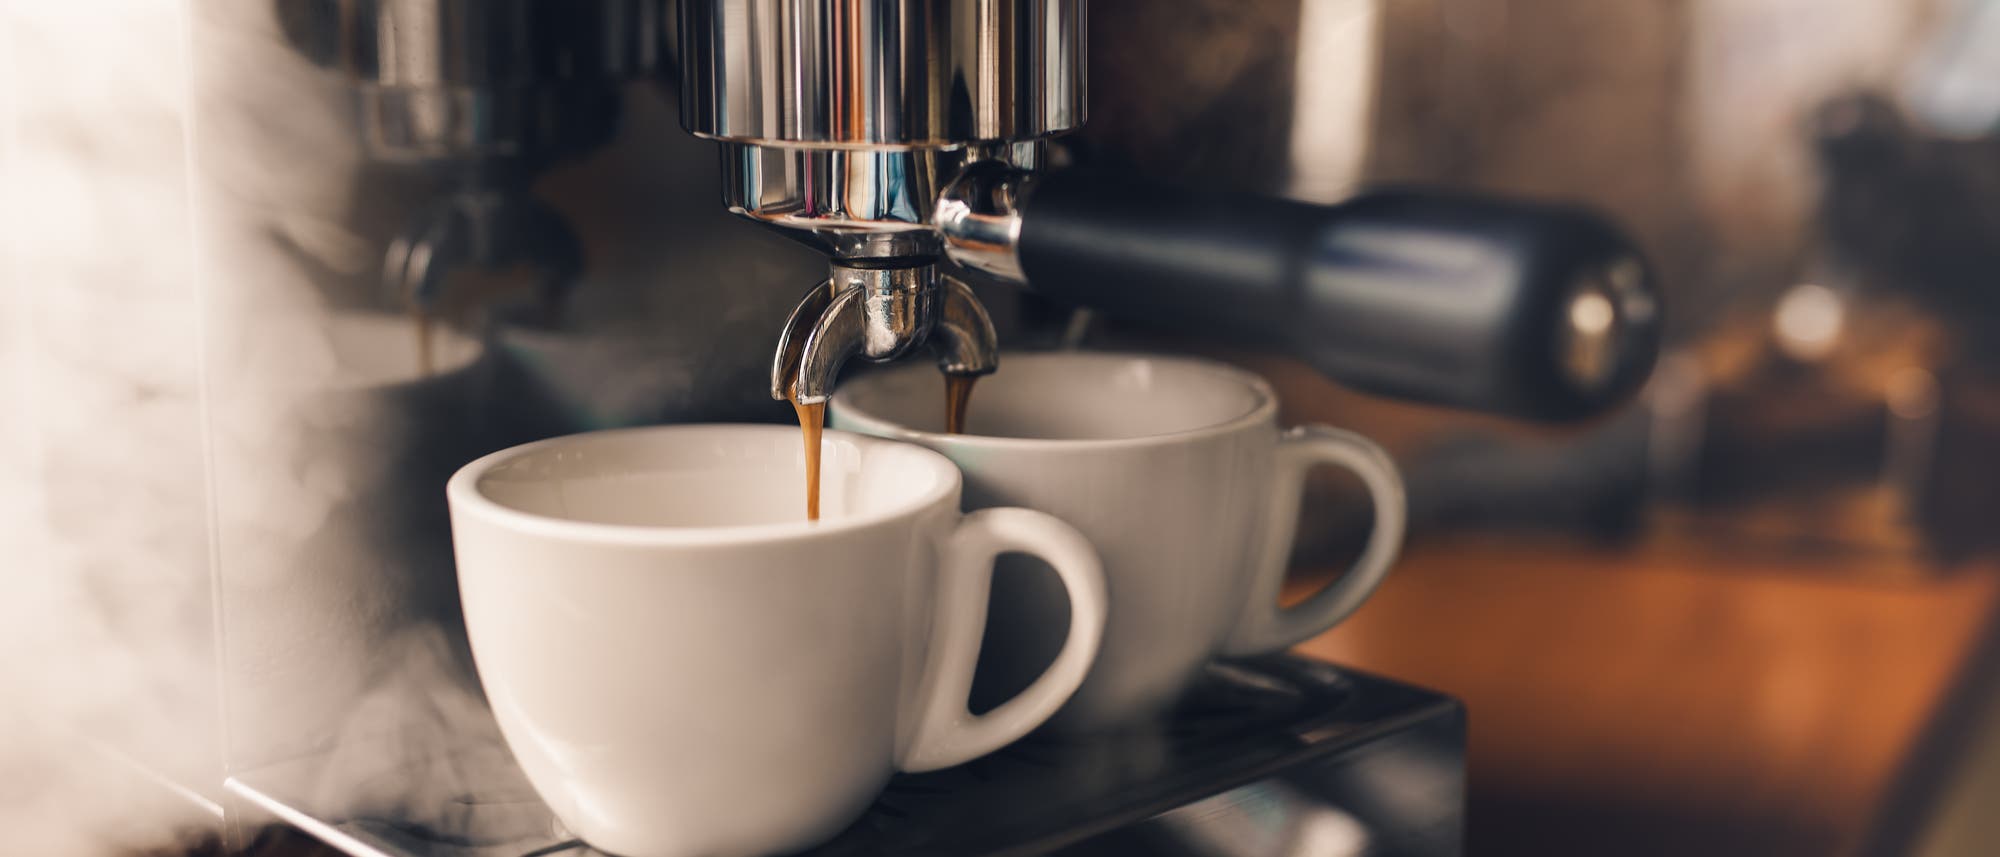 Espresso läuft aus der Maschine in zwei Tassen